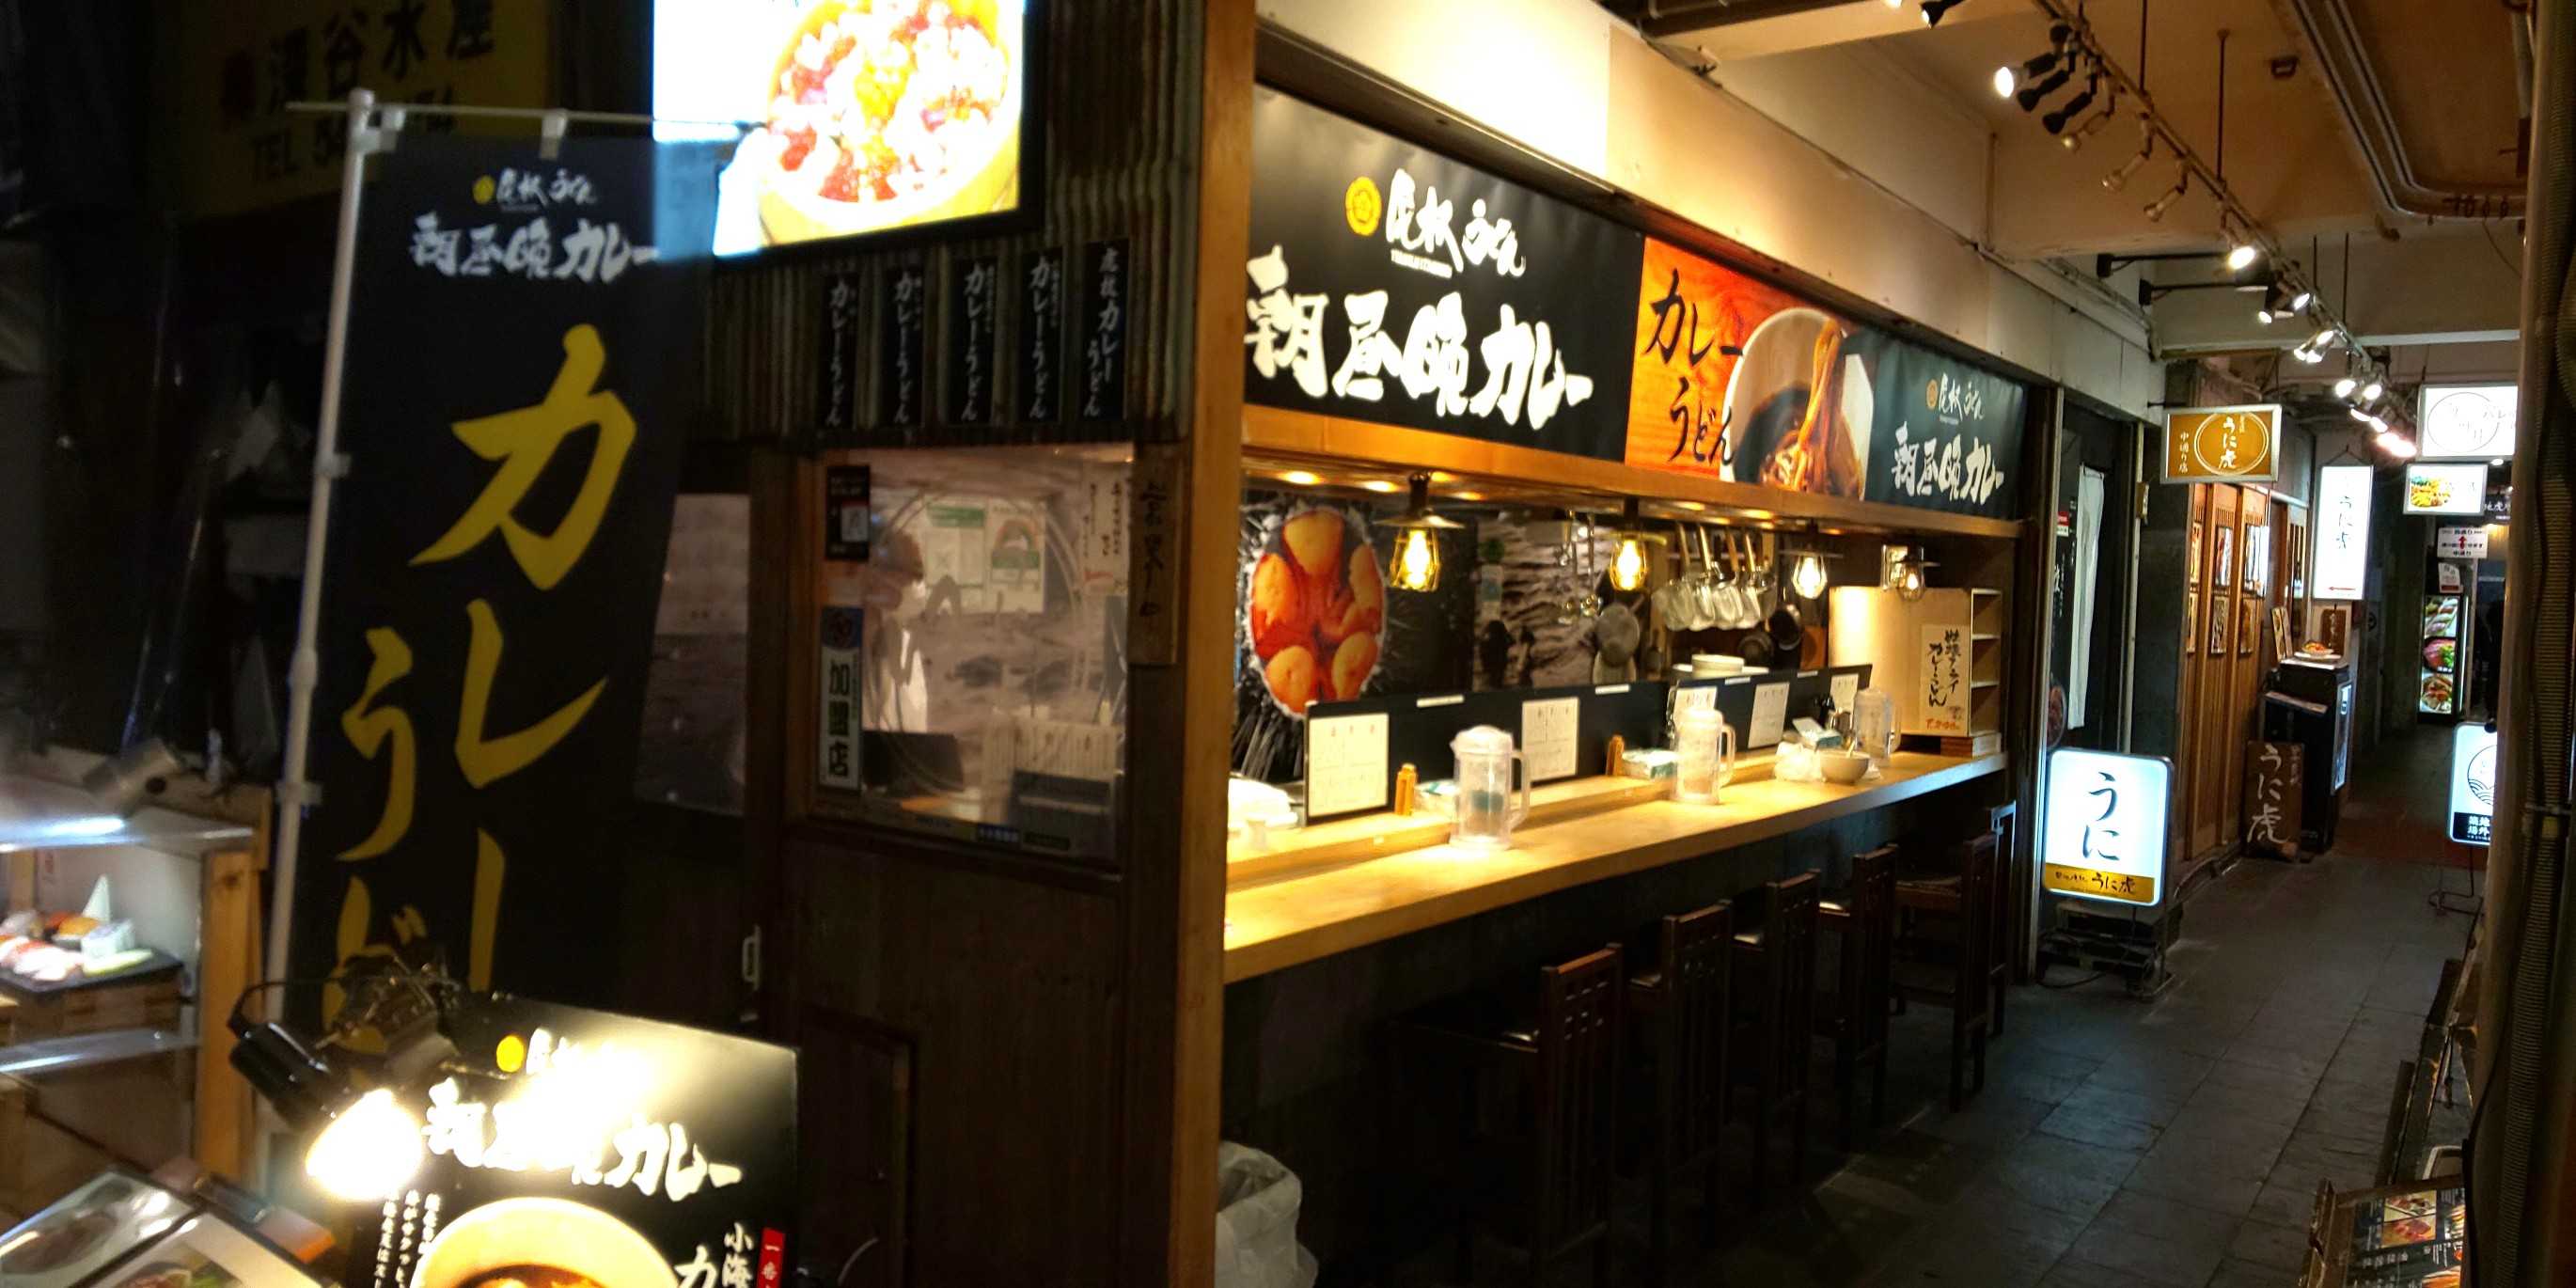 麺聖のうどん 築地場外 朝昼晩カレー グルメの旅 麺聖のうどん 歌舞伎 文楽 城 国宝 博物館 グルメの旅 ブログ版 楽天ブログ